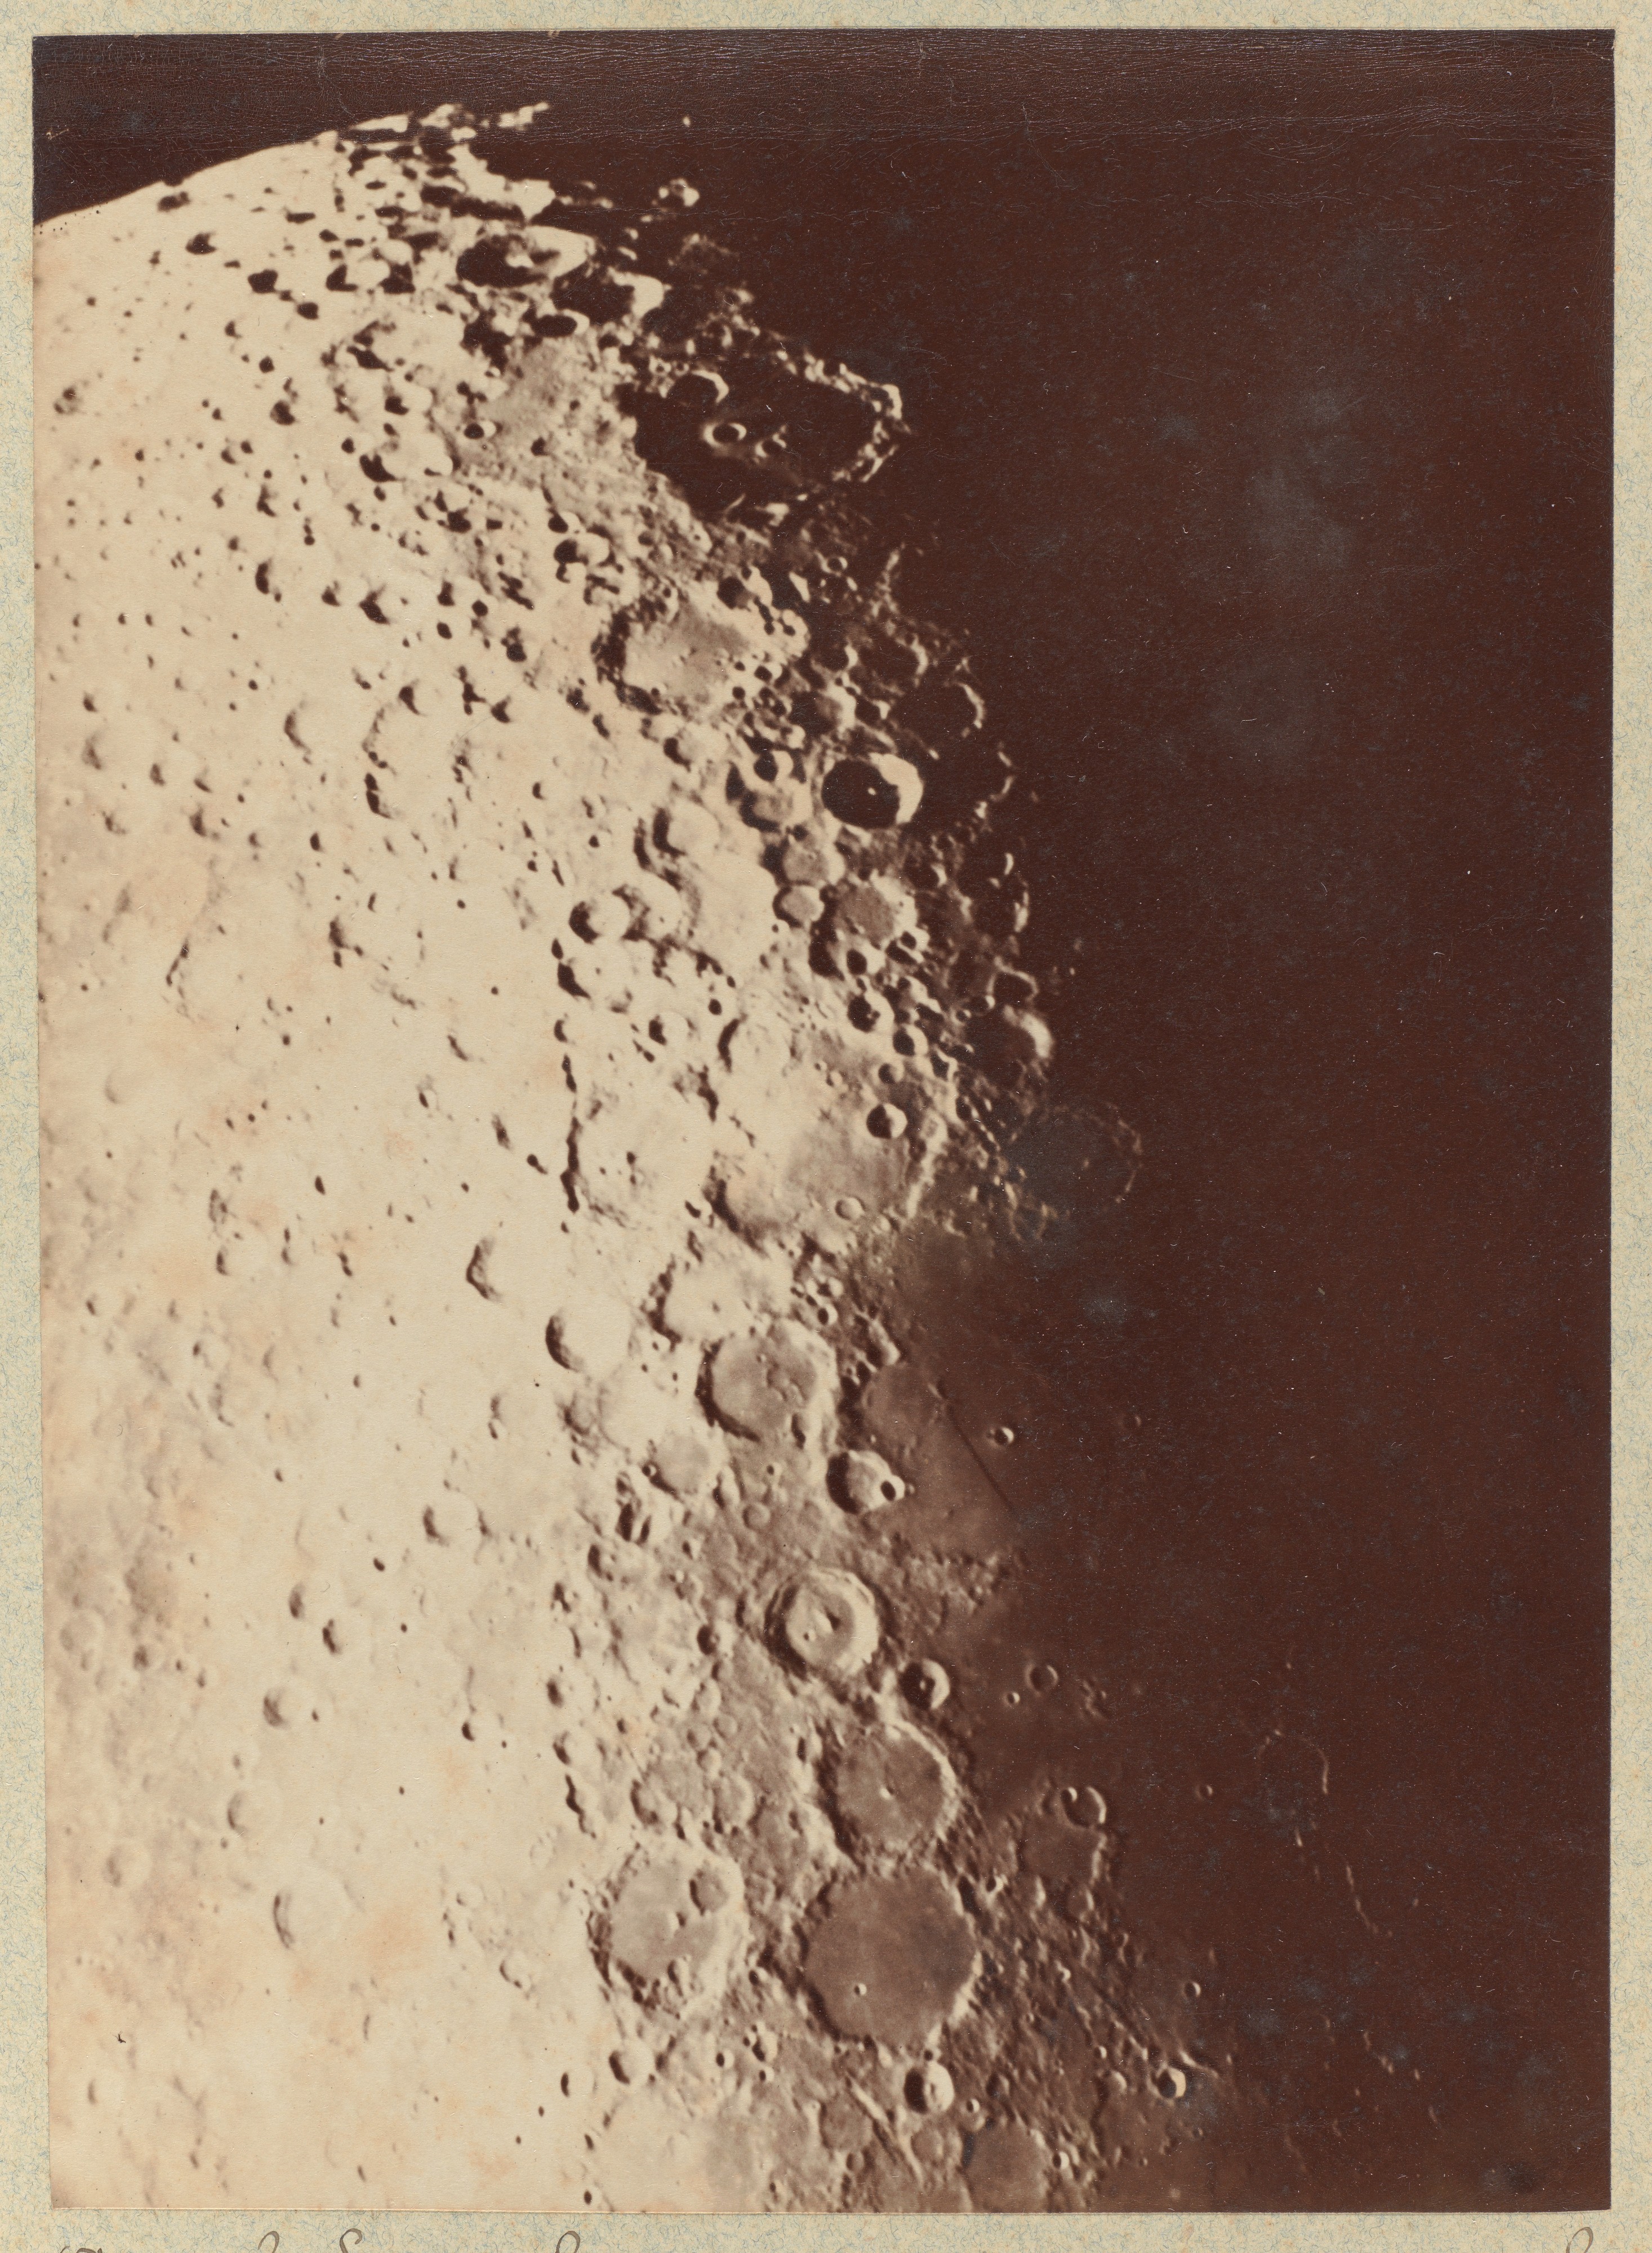 Южный полюс Луны, 1890. Автор Пол Генри, астроном из Парижской обсерватории